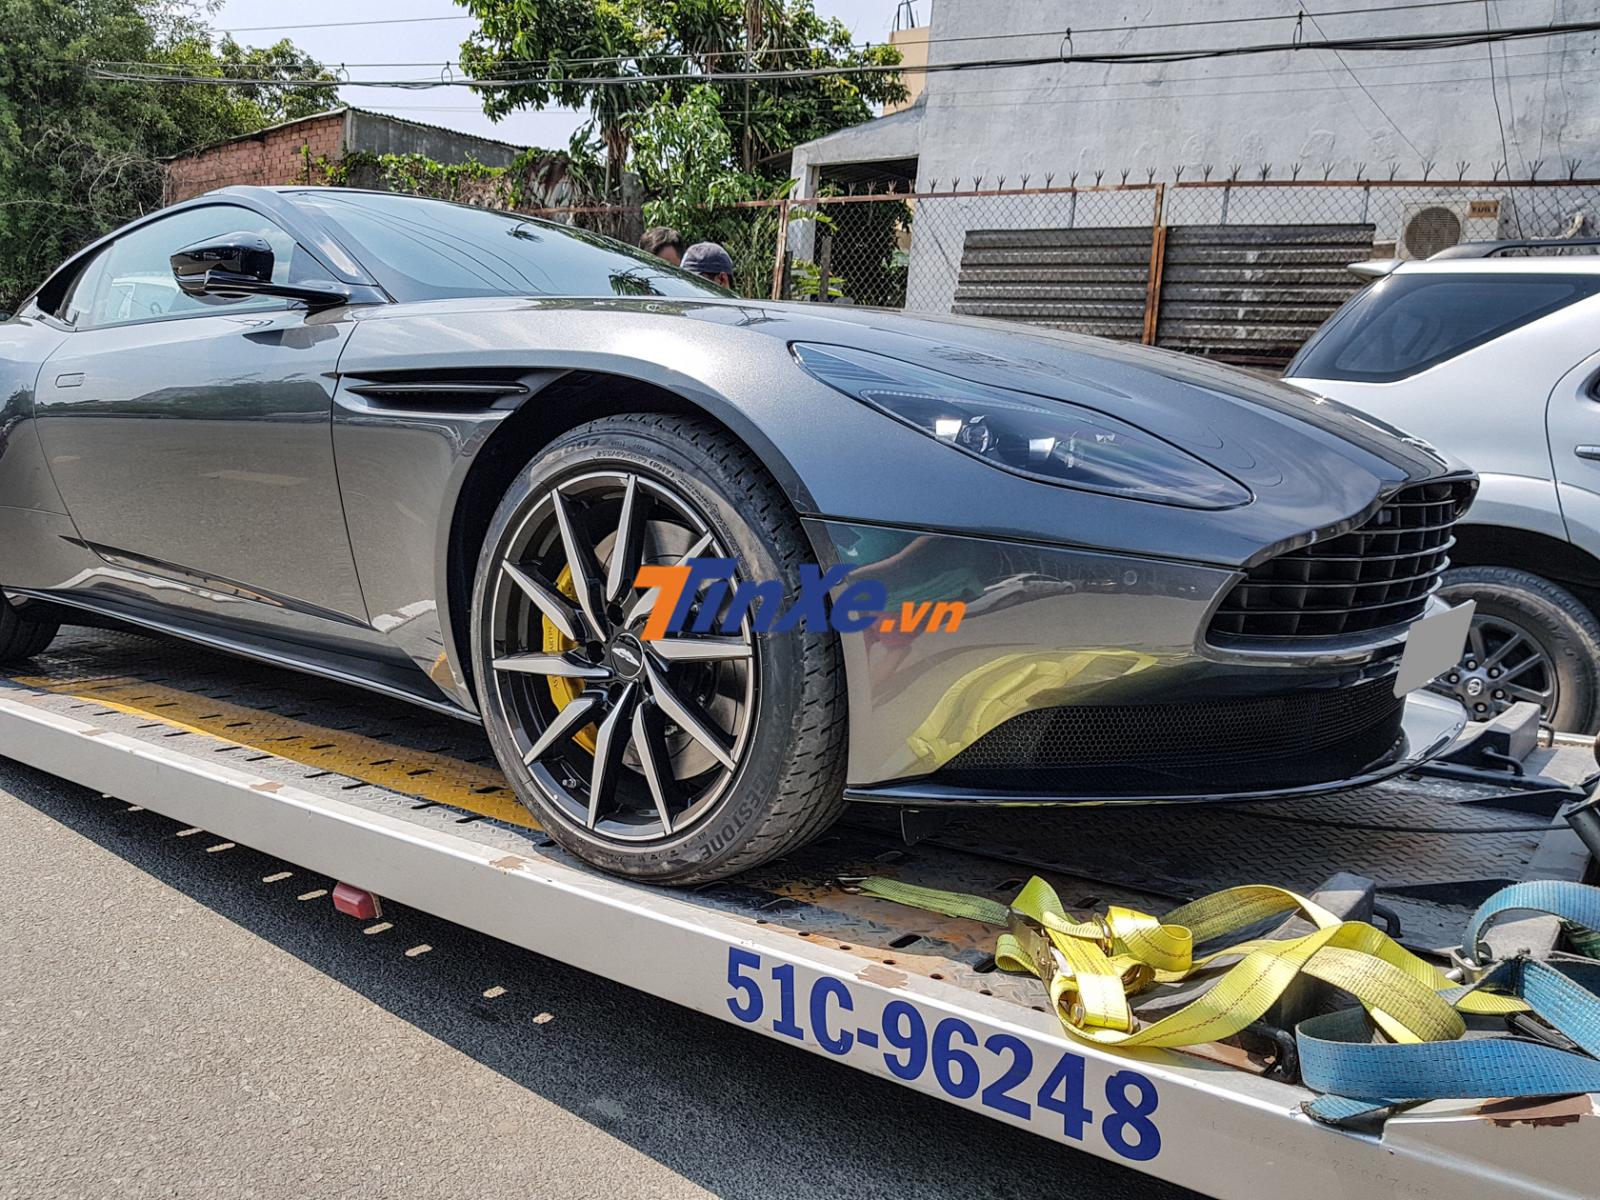 Siêu xe Aston Martin DB11 độc nhất Việt Nam được vận chuyển đi đăng kiểm biển số